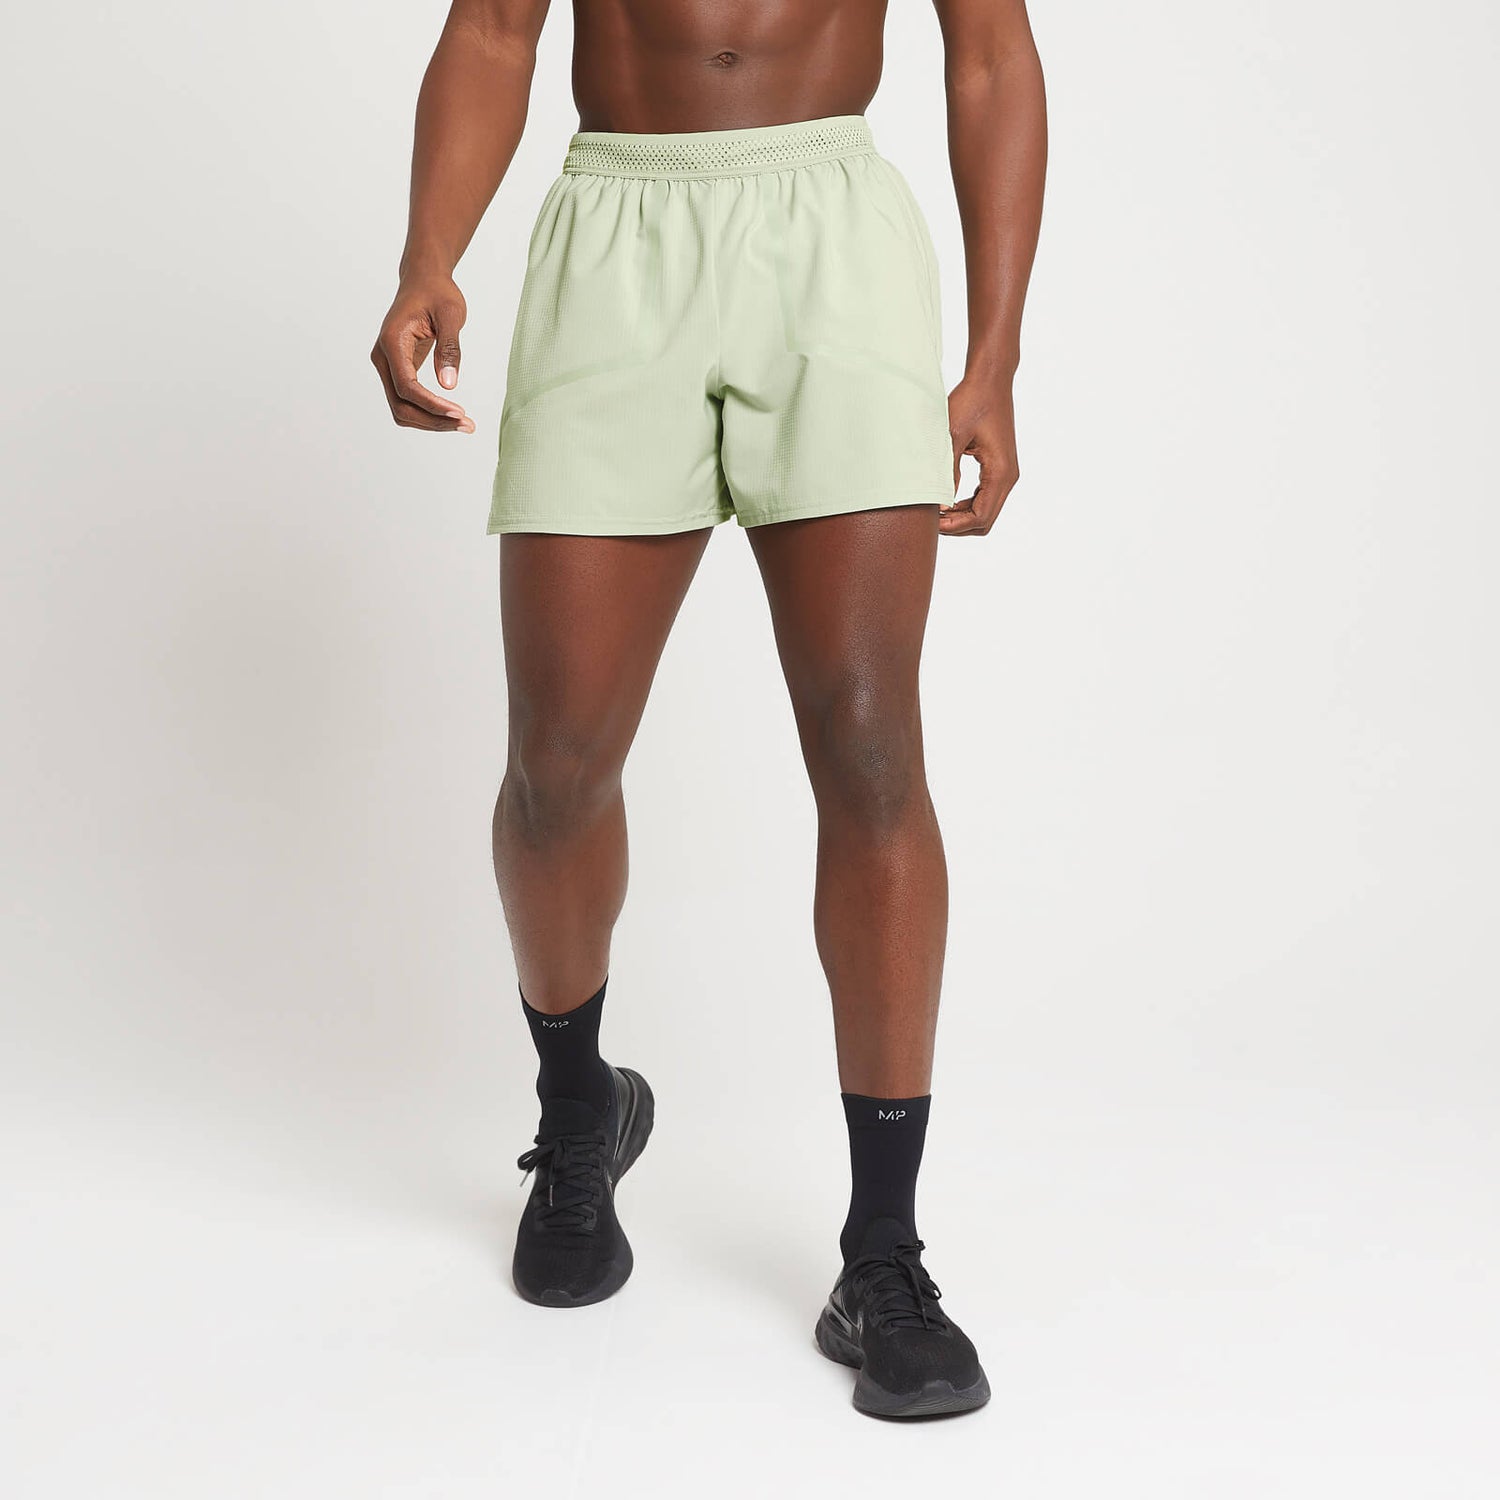 Pantalón corto Velocity Ultra con tiro de 12,7 cm para hombre de MP - Verde escarcha